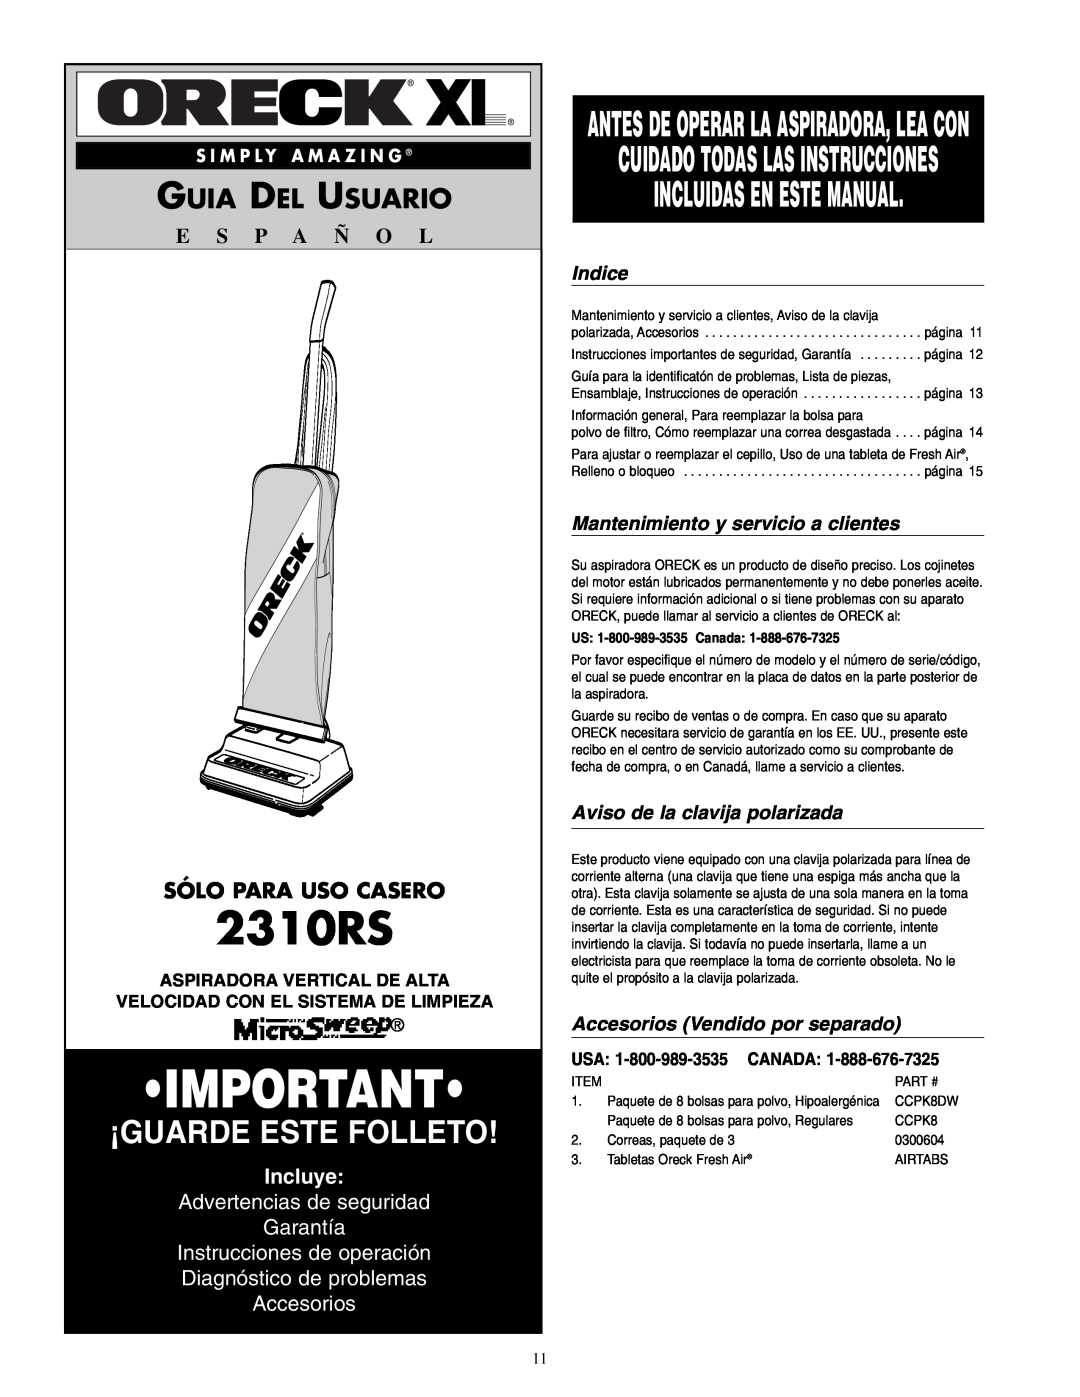 Oreck 2310RS Incluidas En Este Manual, Guia Del Usuario, Sólo Para Uso Casero, Incluye, Advertencias de seguridad Garantía 